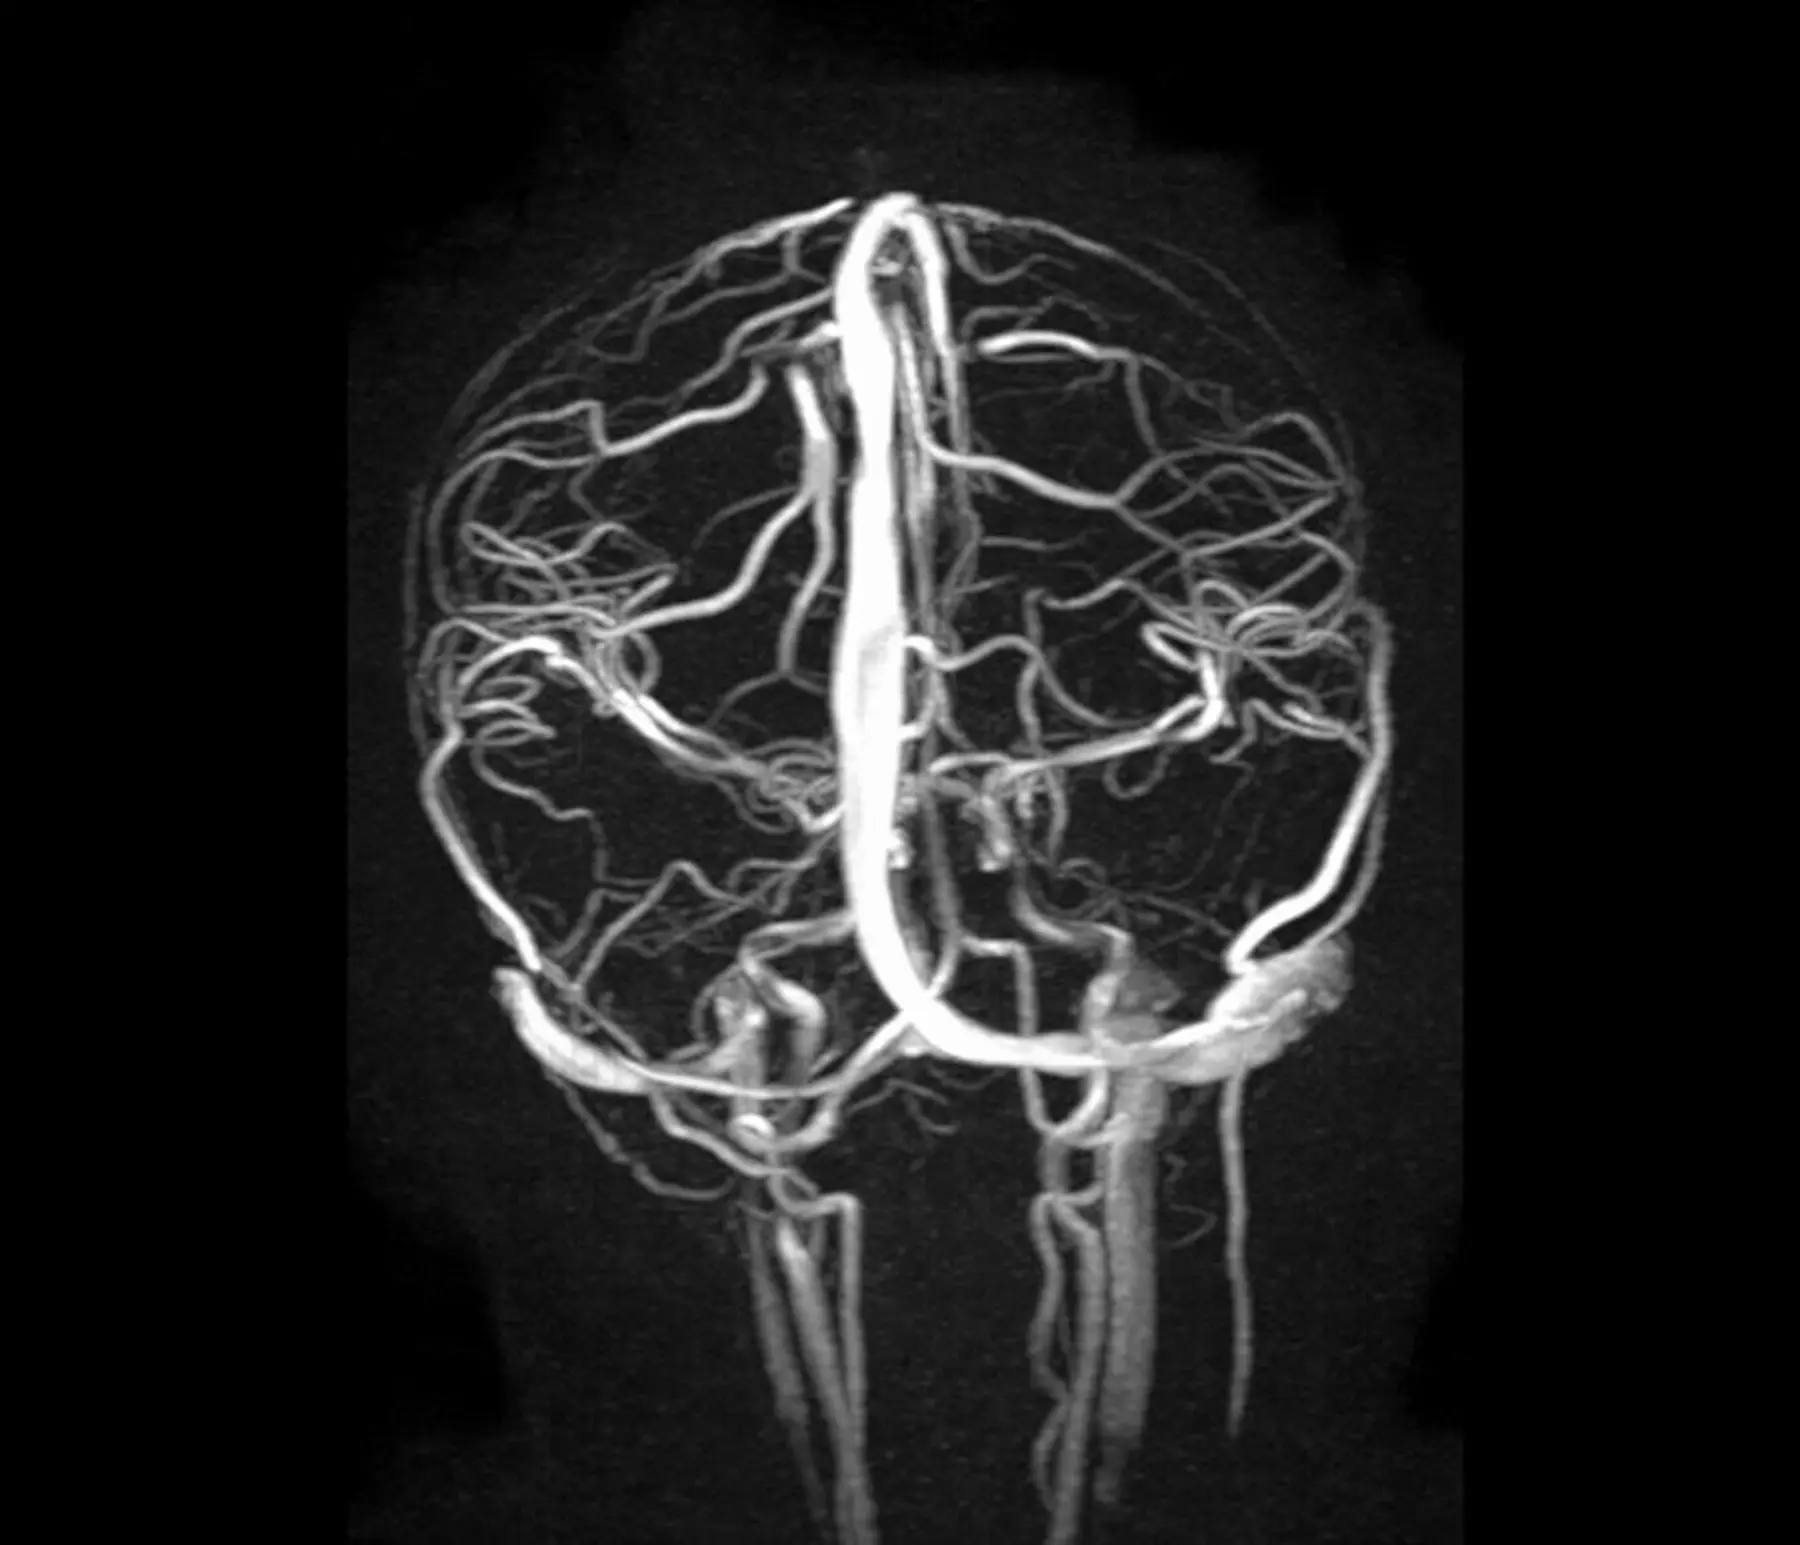 Angiografia rezonansu magnetycznego (angio MR)